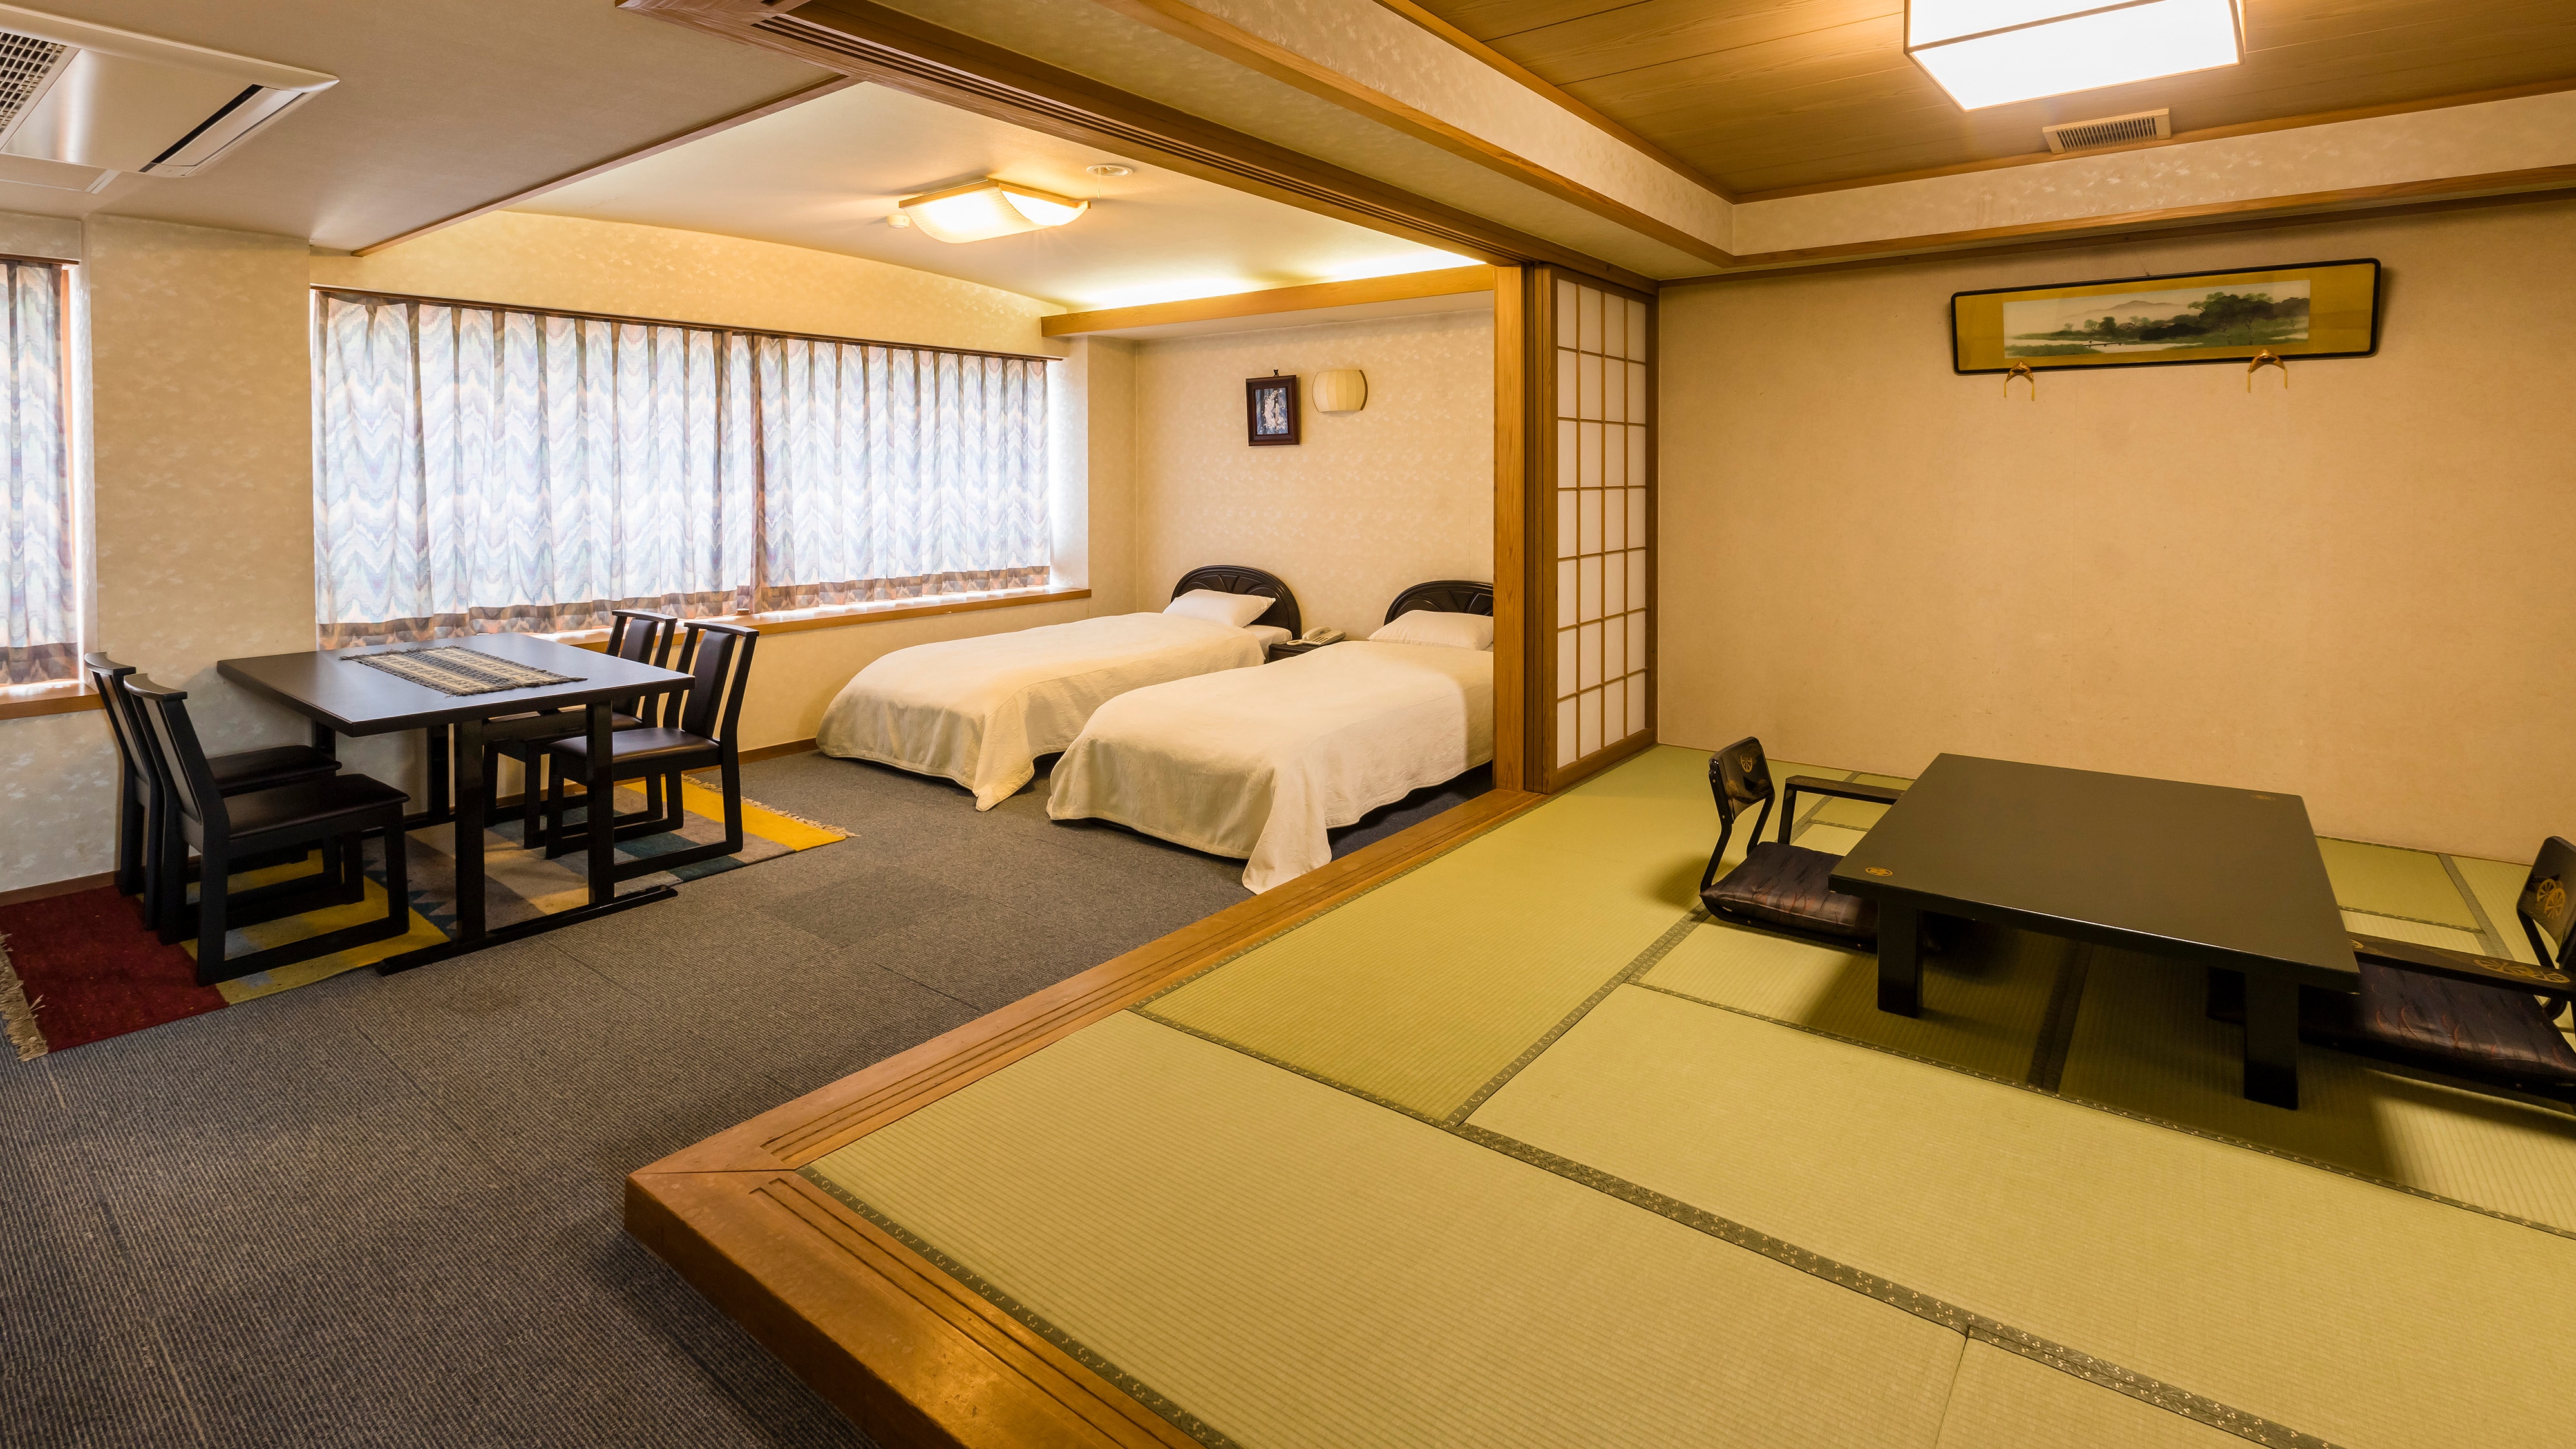 1등급의 특별 일본식 서양실 10조 다다미 트윈 침실(금연)